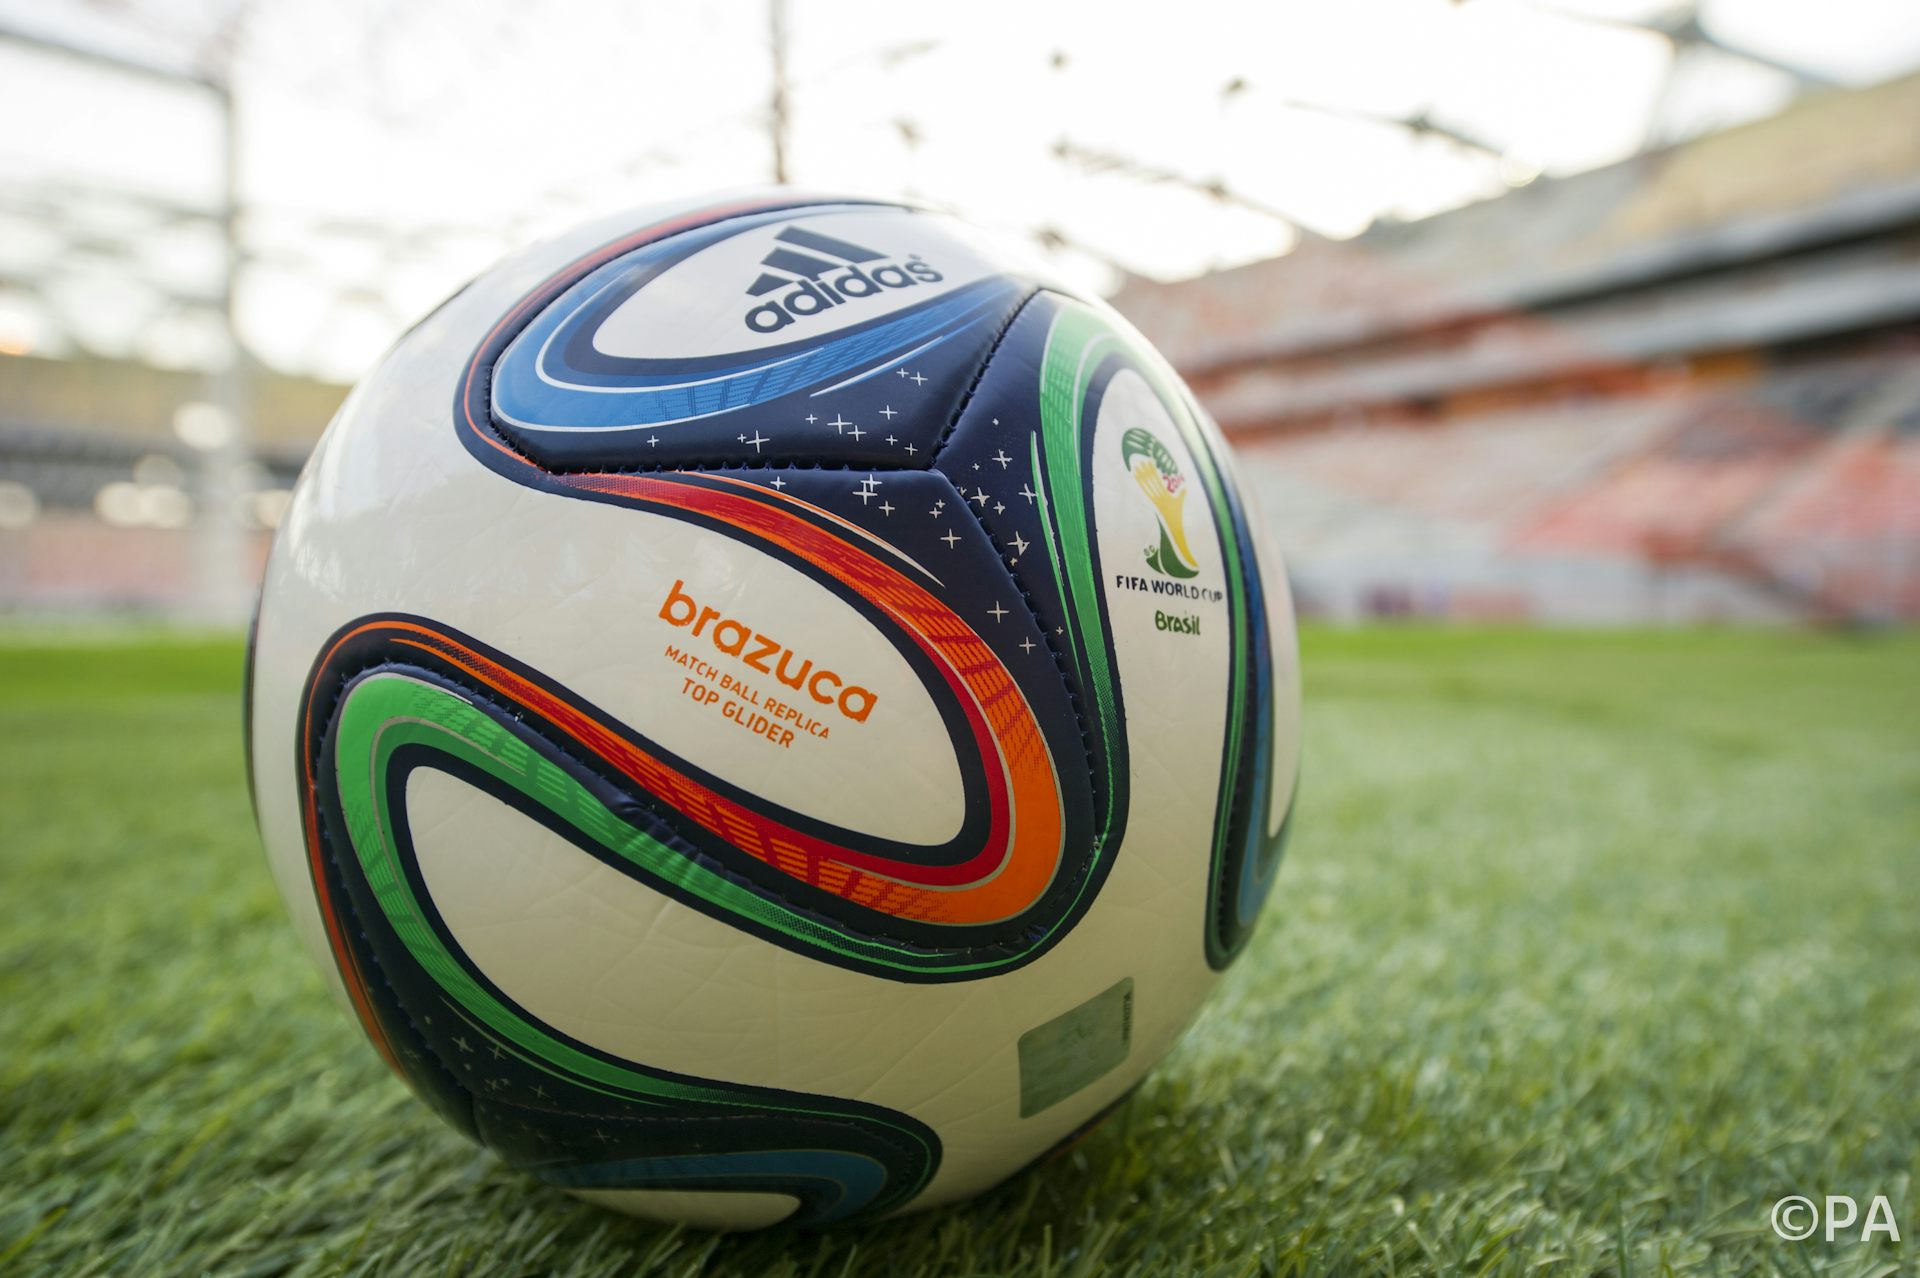 2014 world cup match ball